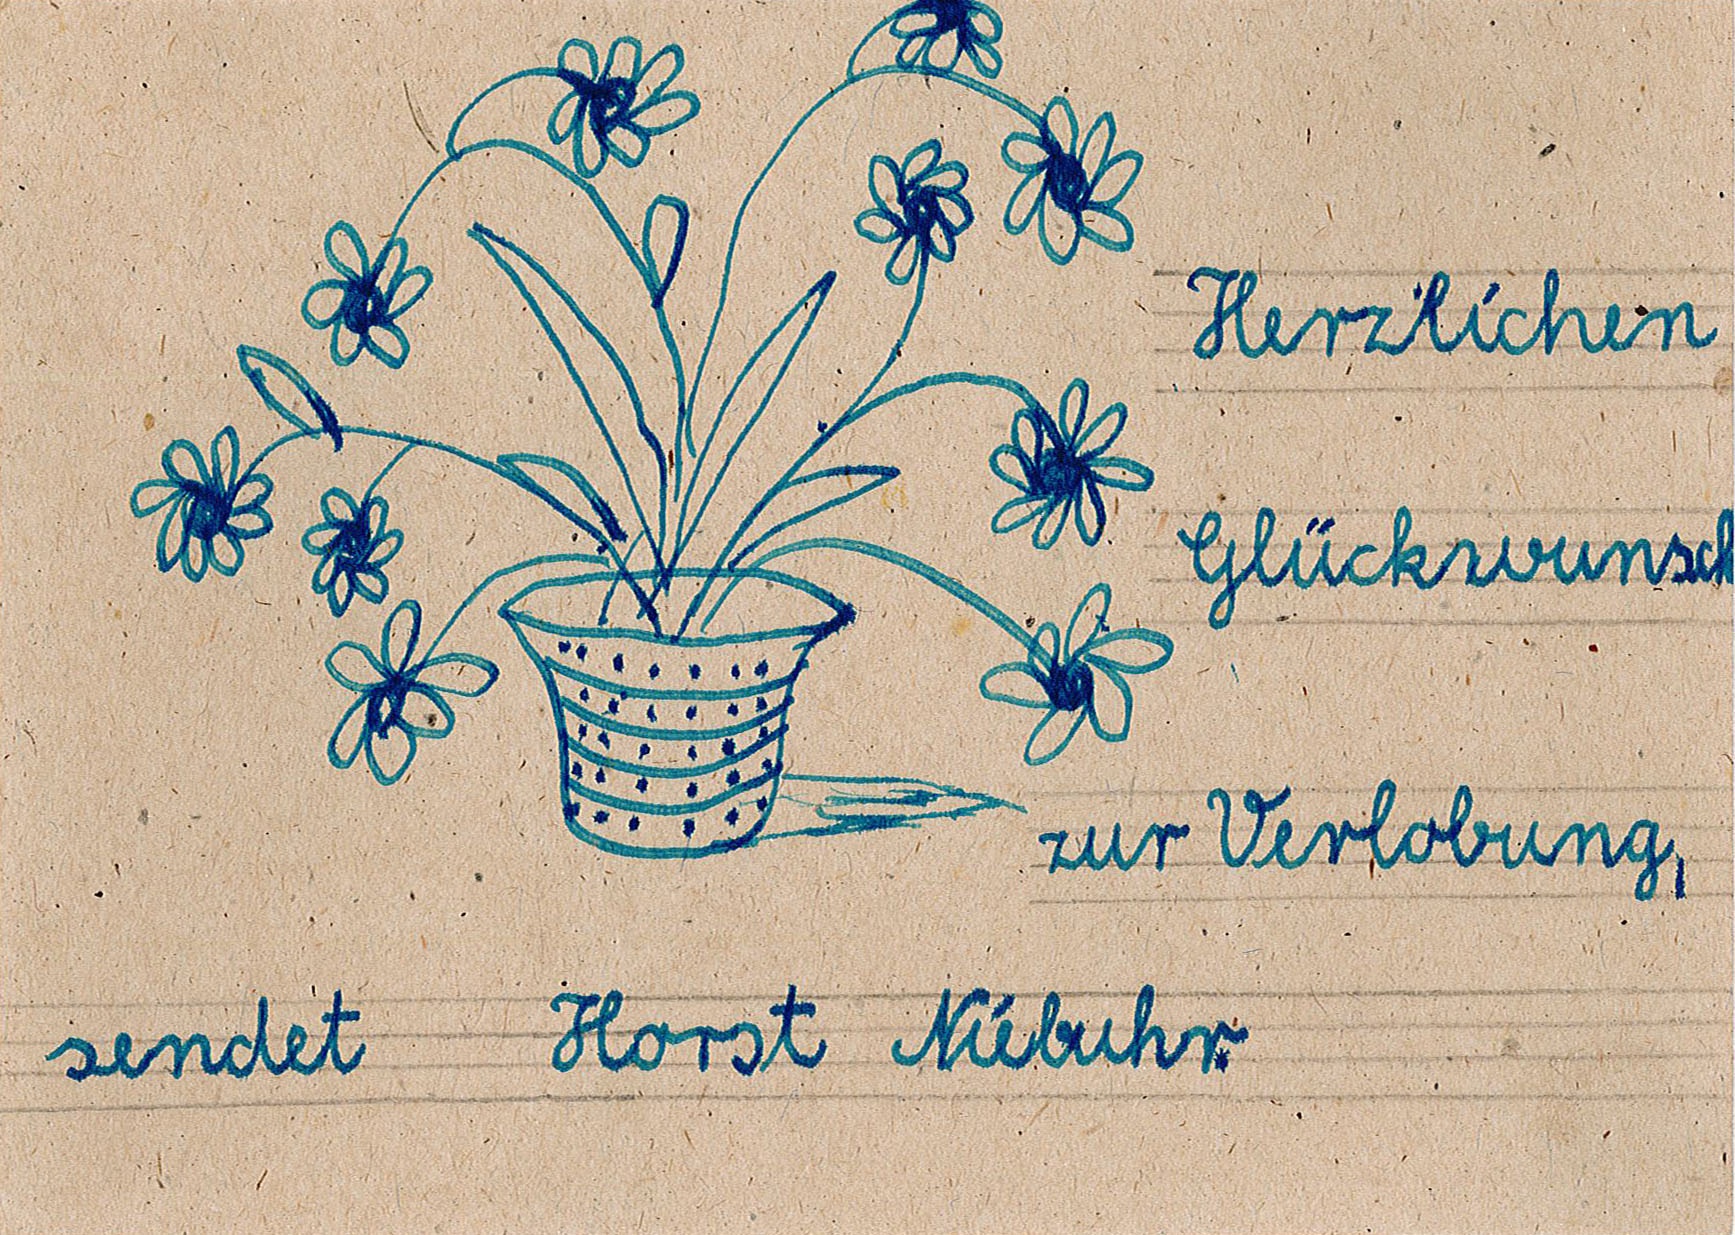 Glückwunschkarte zur Verlobung an Ingeborg Range von Horst Niebuhr, 27. März 1948 (Museum Wolmirstedt RR-F)